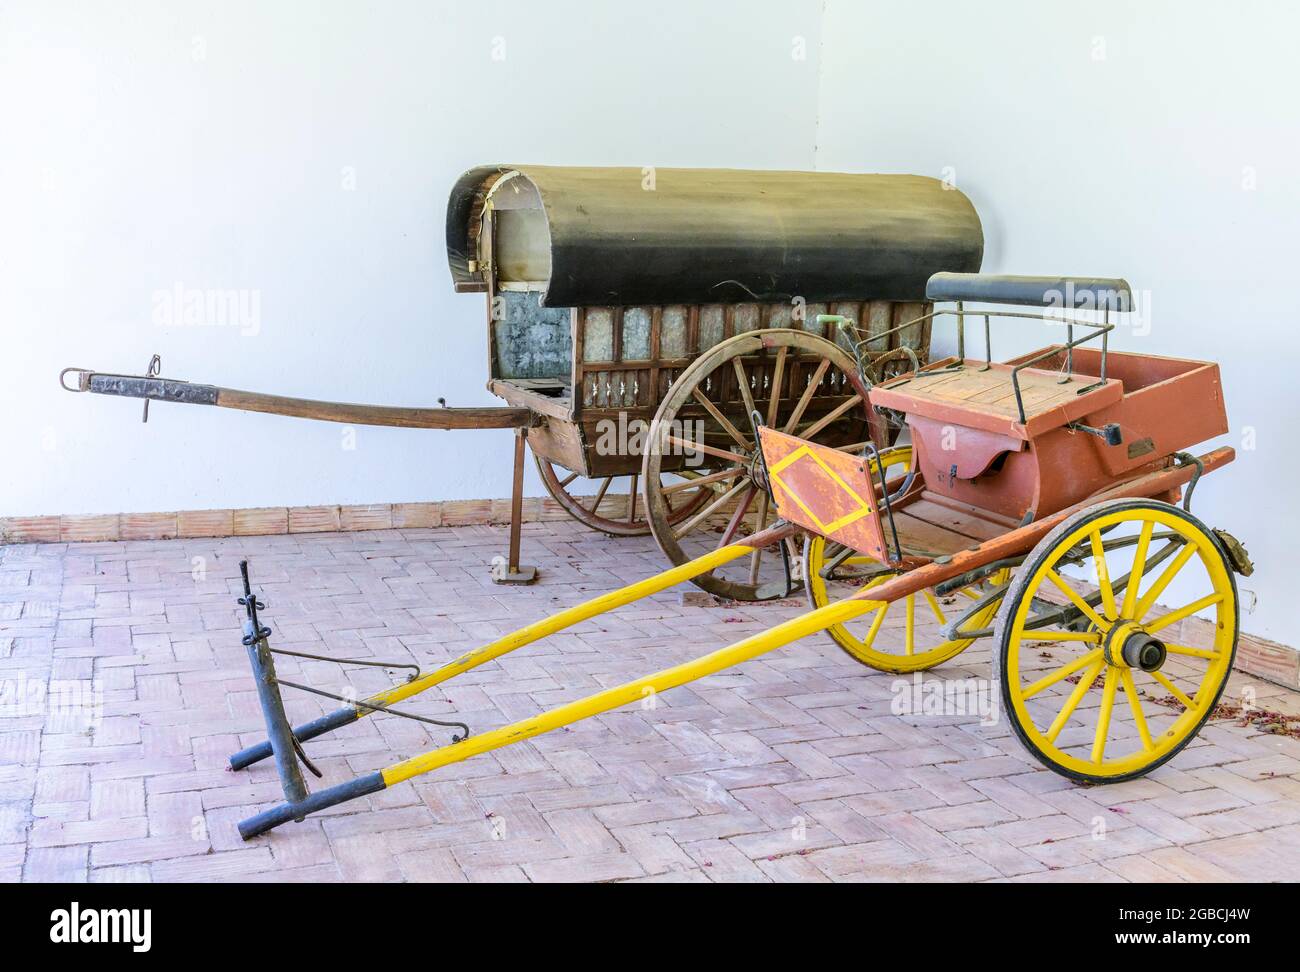 Expositions de charrettes artisanales dessinées par des chevaux au musée Sao bras de Alportel algarve portugal Banque D'Images